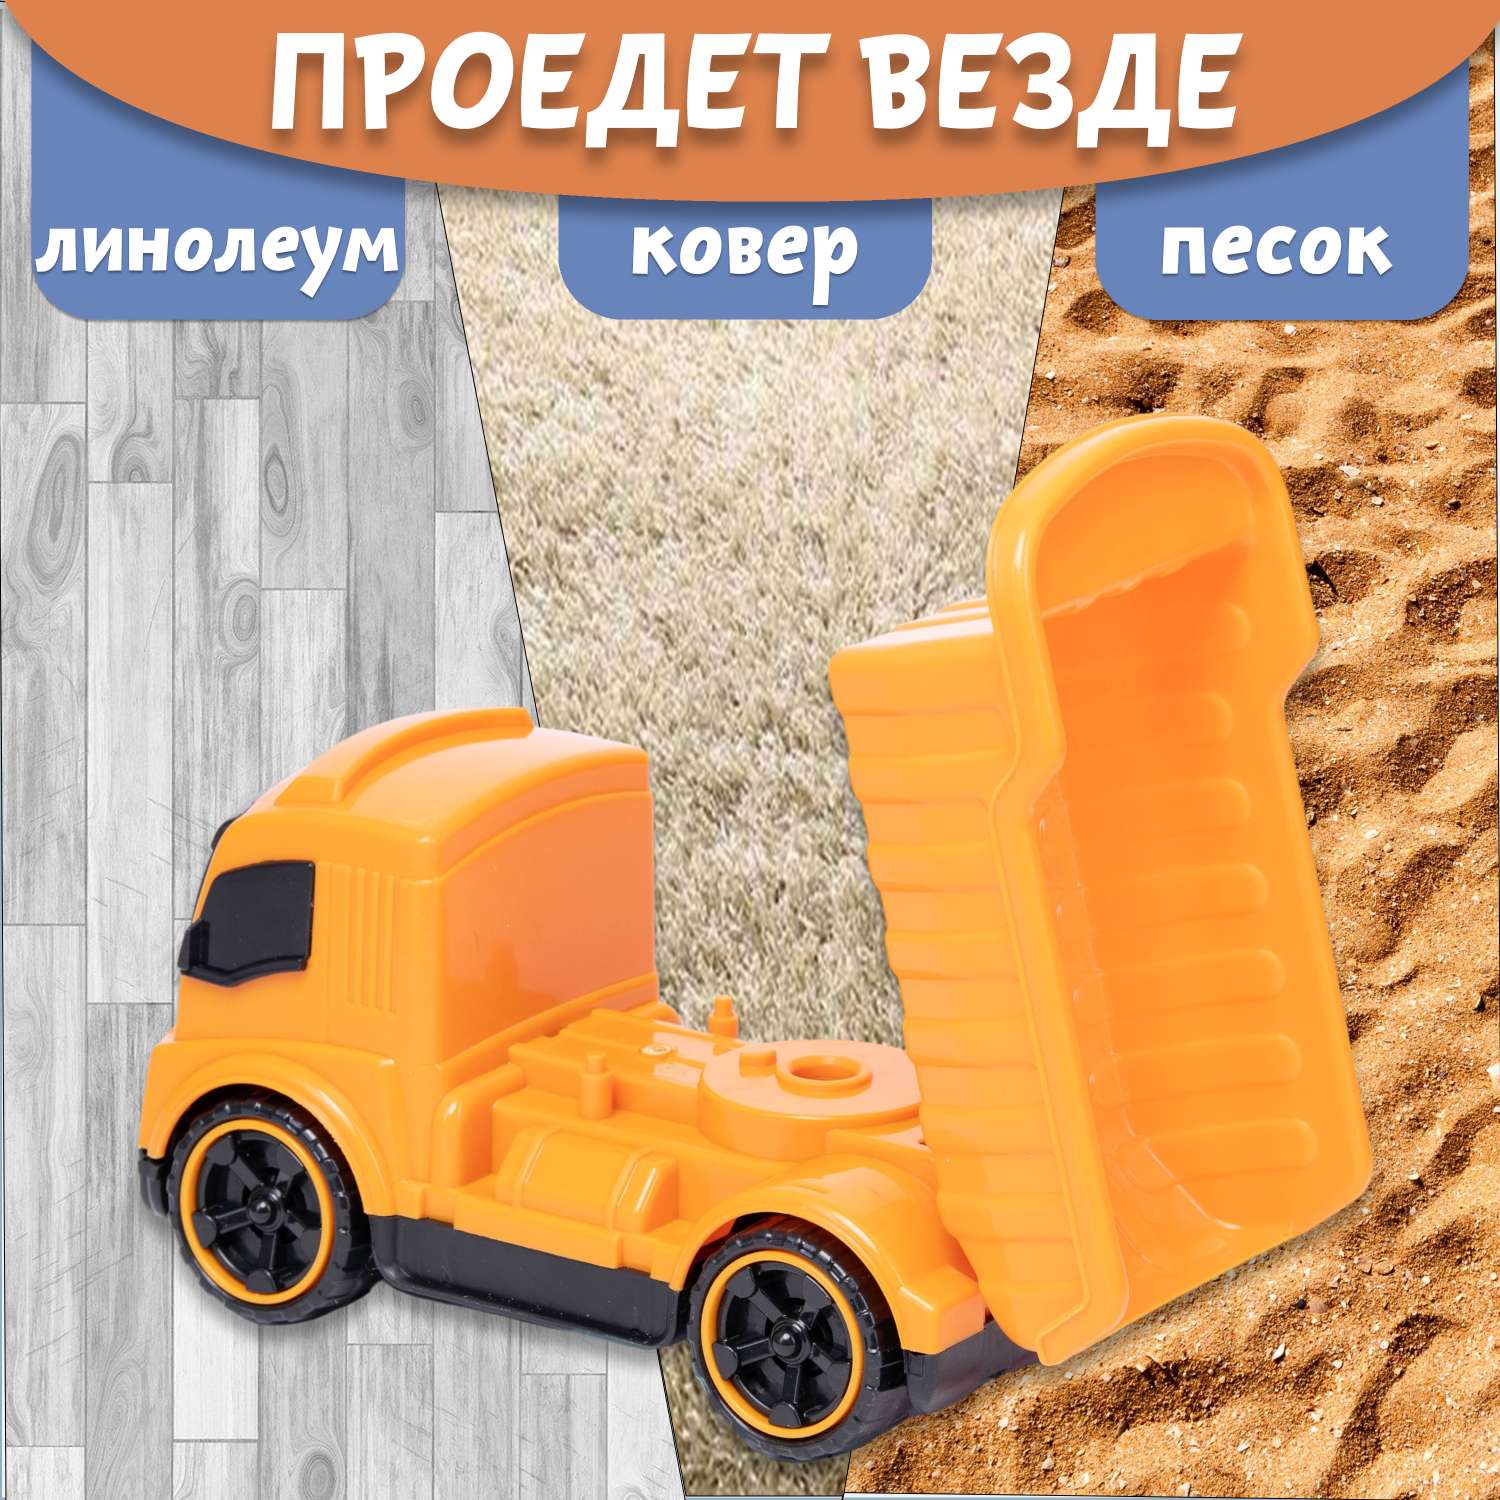 Машинка Нижегородская игрушка Самосвал оранжевый ктг270_ор - фото 7